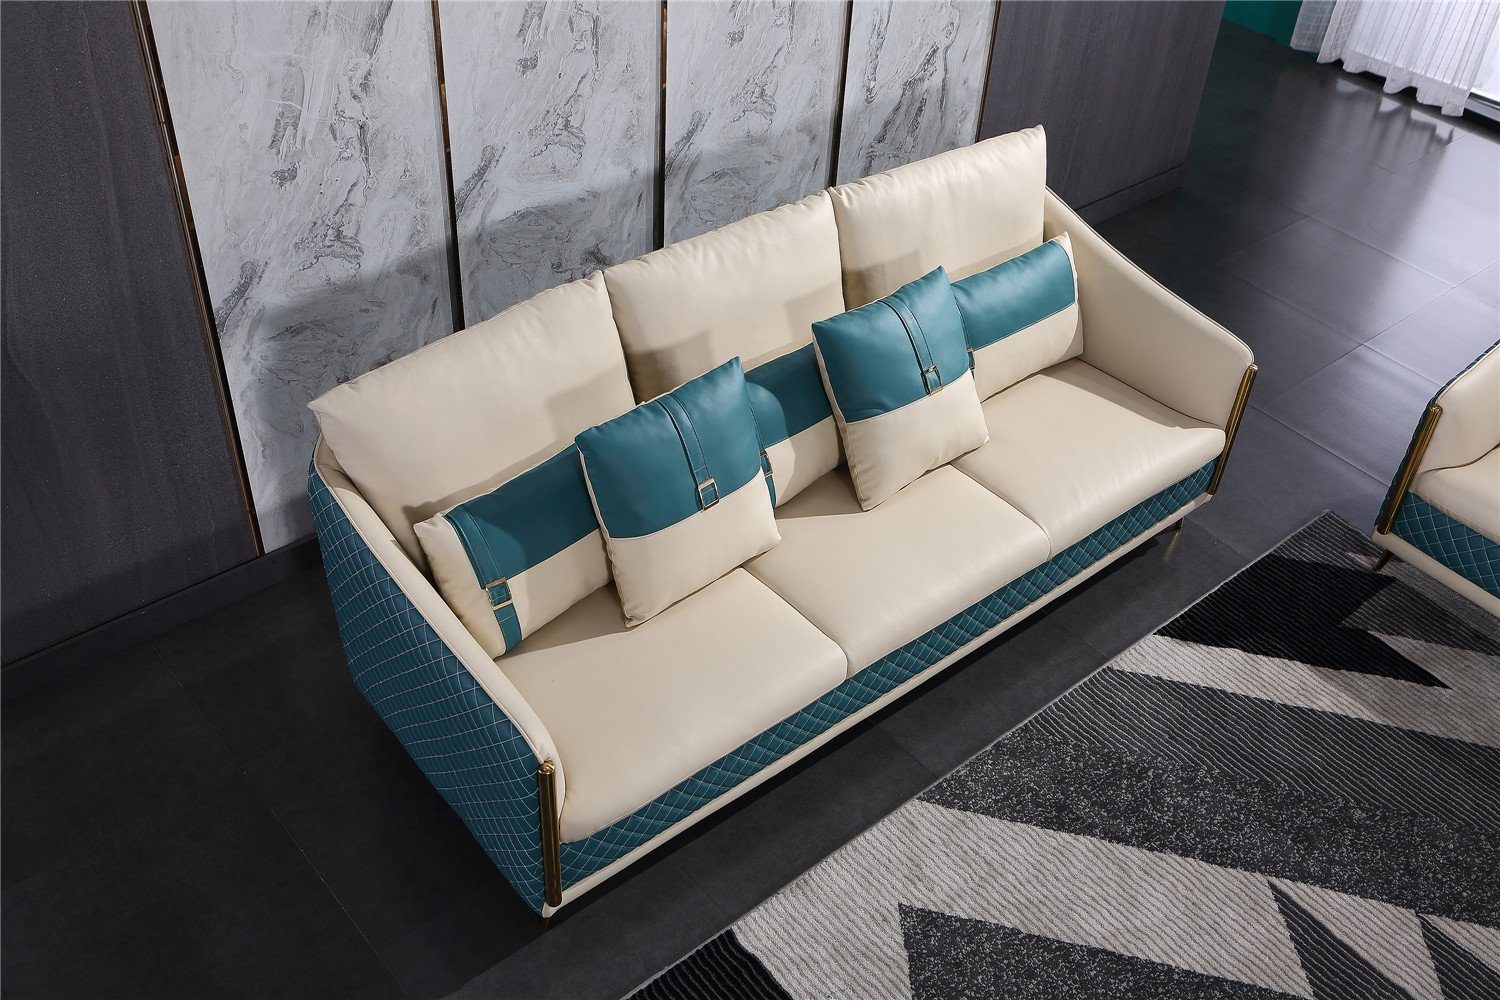 Neu, Made Sofa Moderne Polstermöbel in Europe Sofagarnitur 3+1+1 Sitzer luxus JVmoebel Design